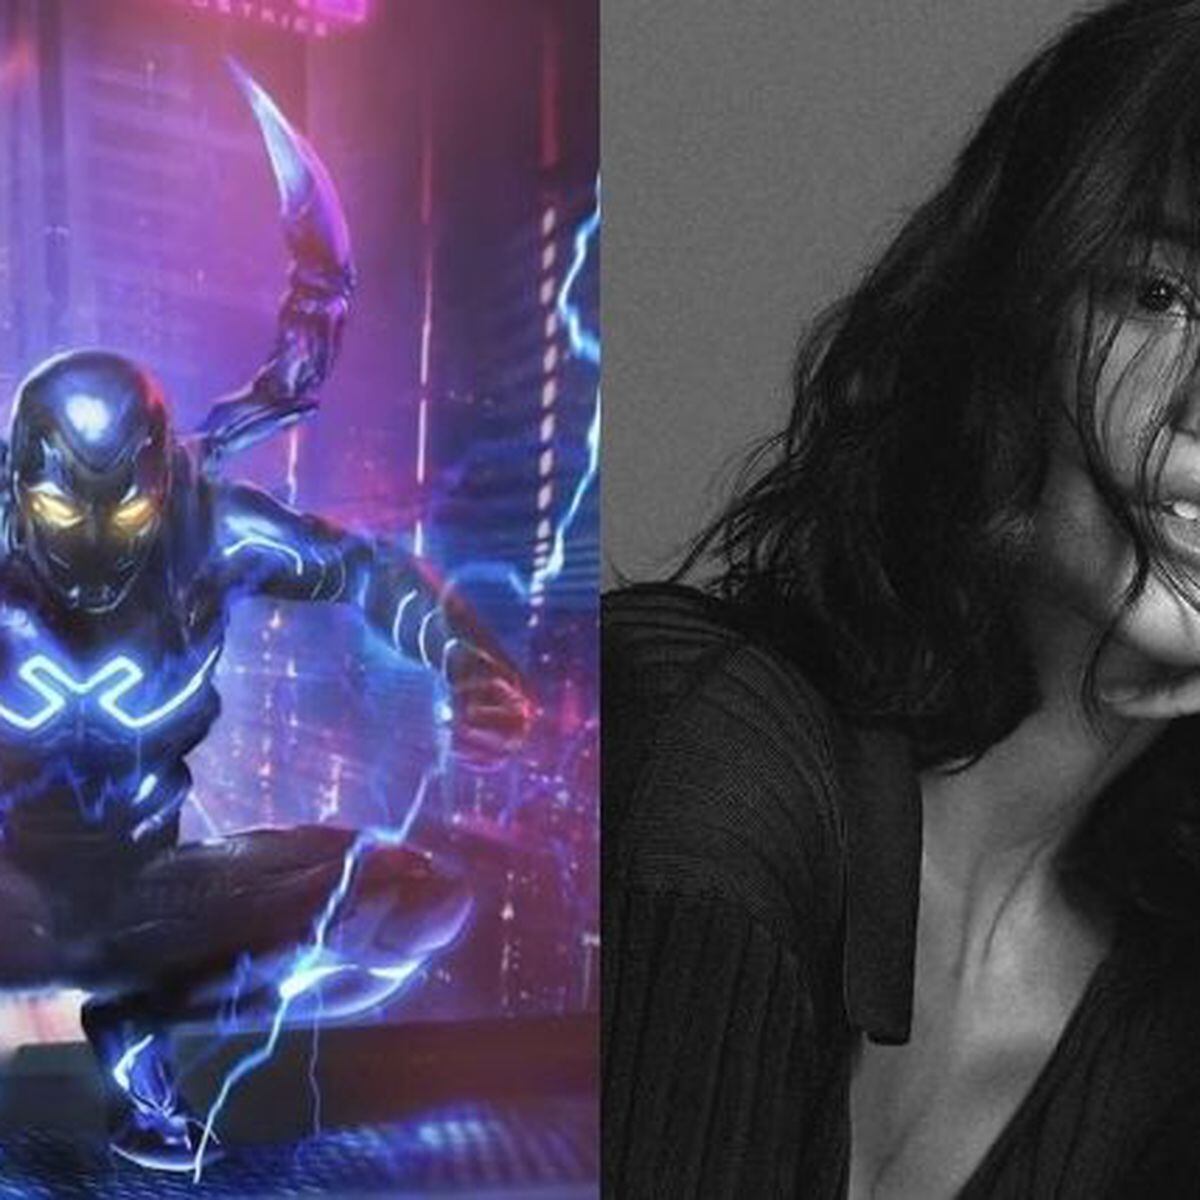 Bruna Marquezine será protagonista de filme de super-herói da DC